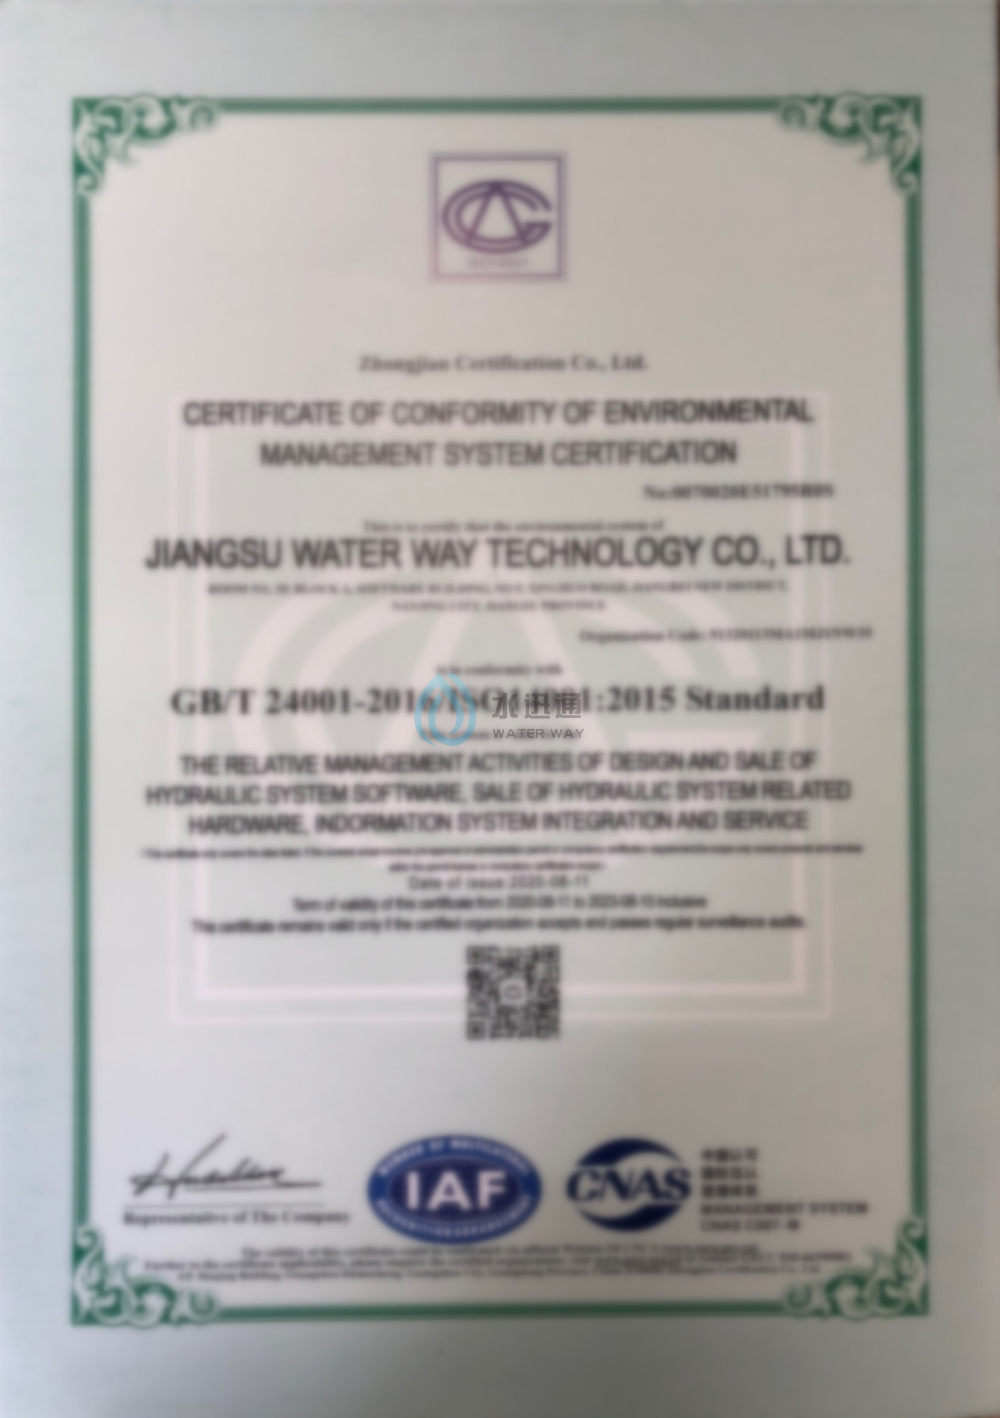 環境管理體系認證證書英文版